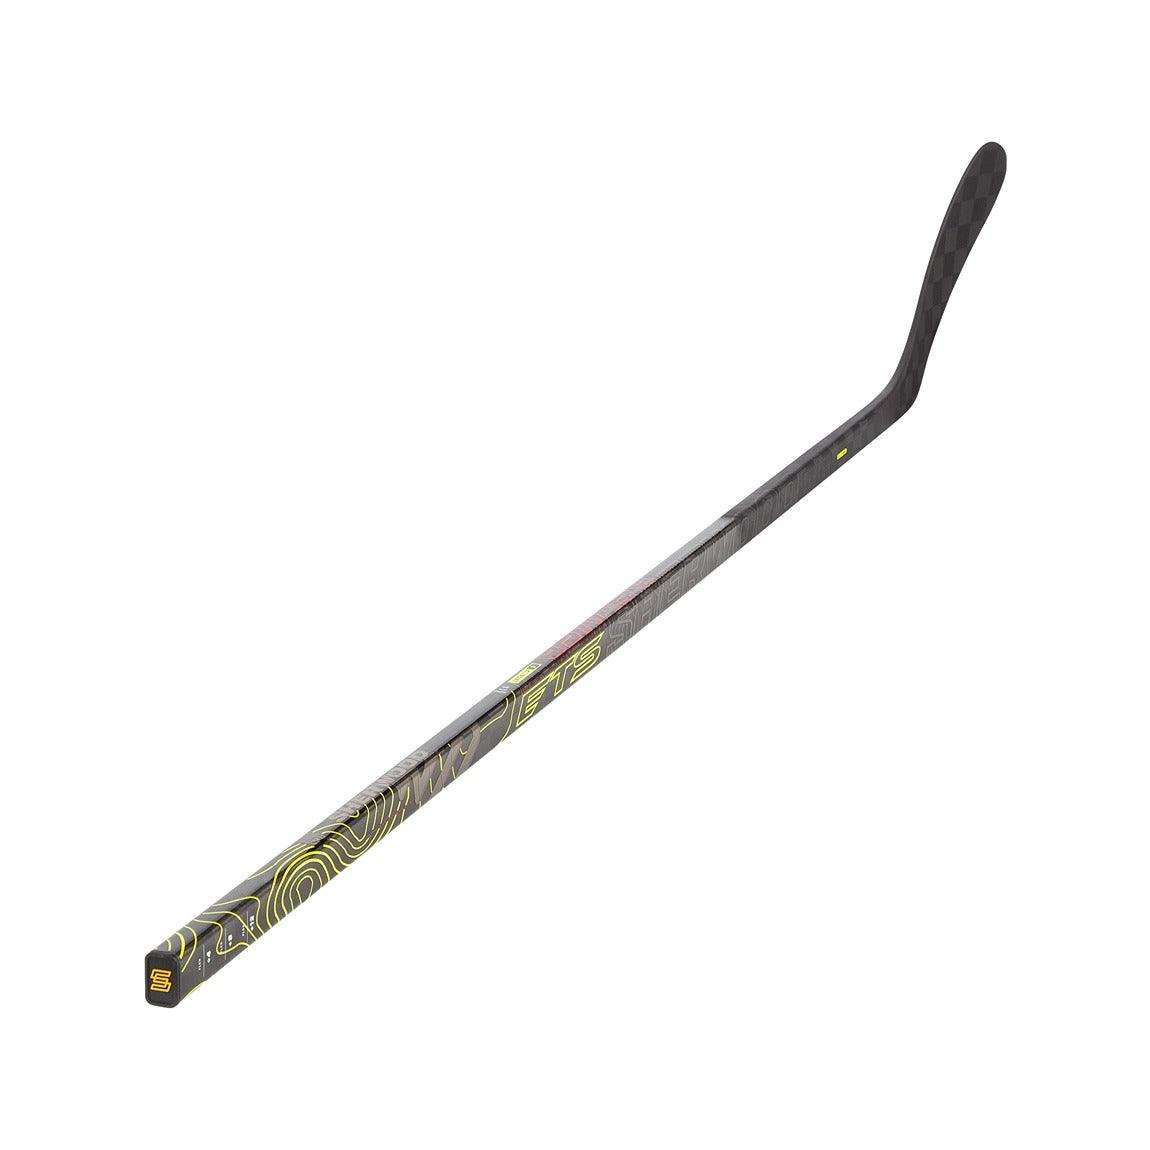 Sherwood Rekker Legend 1 Hockey Stick 